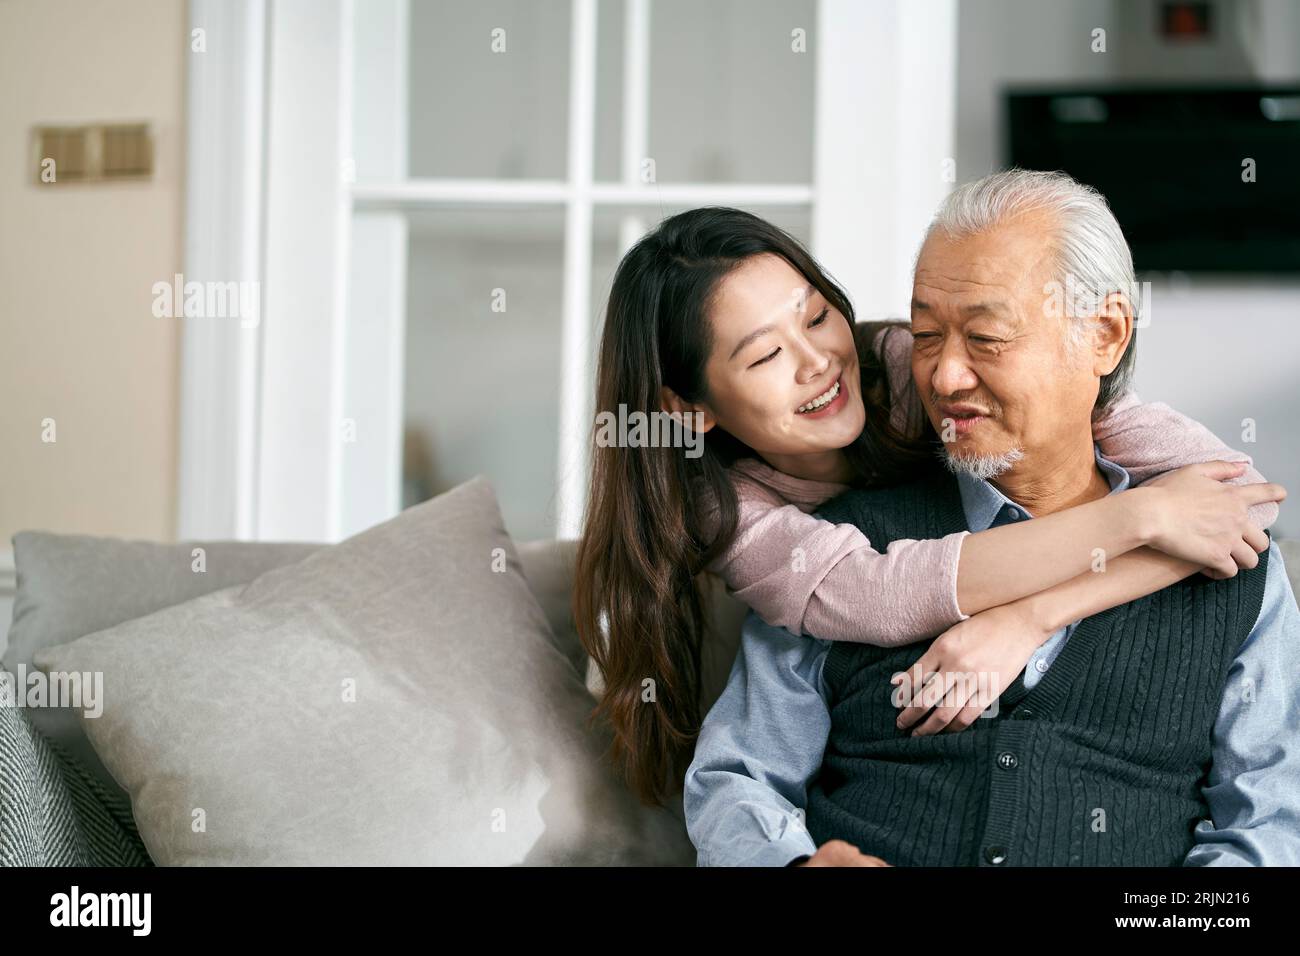 asiatischer Seniorenvater und Erwachsene Tochter, die zu Hause auf der Couch sitzen und ein angenehmes Gespräch genießen Stockfoto